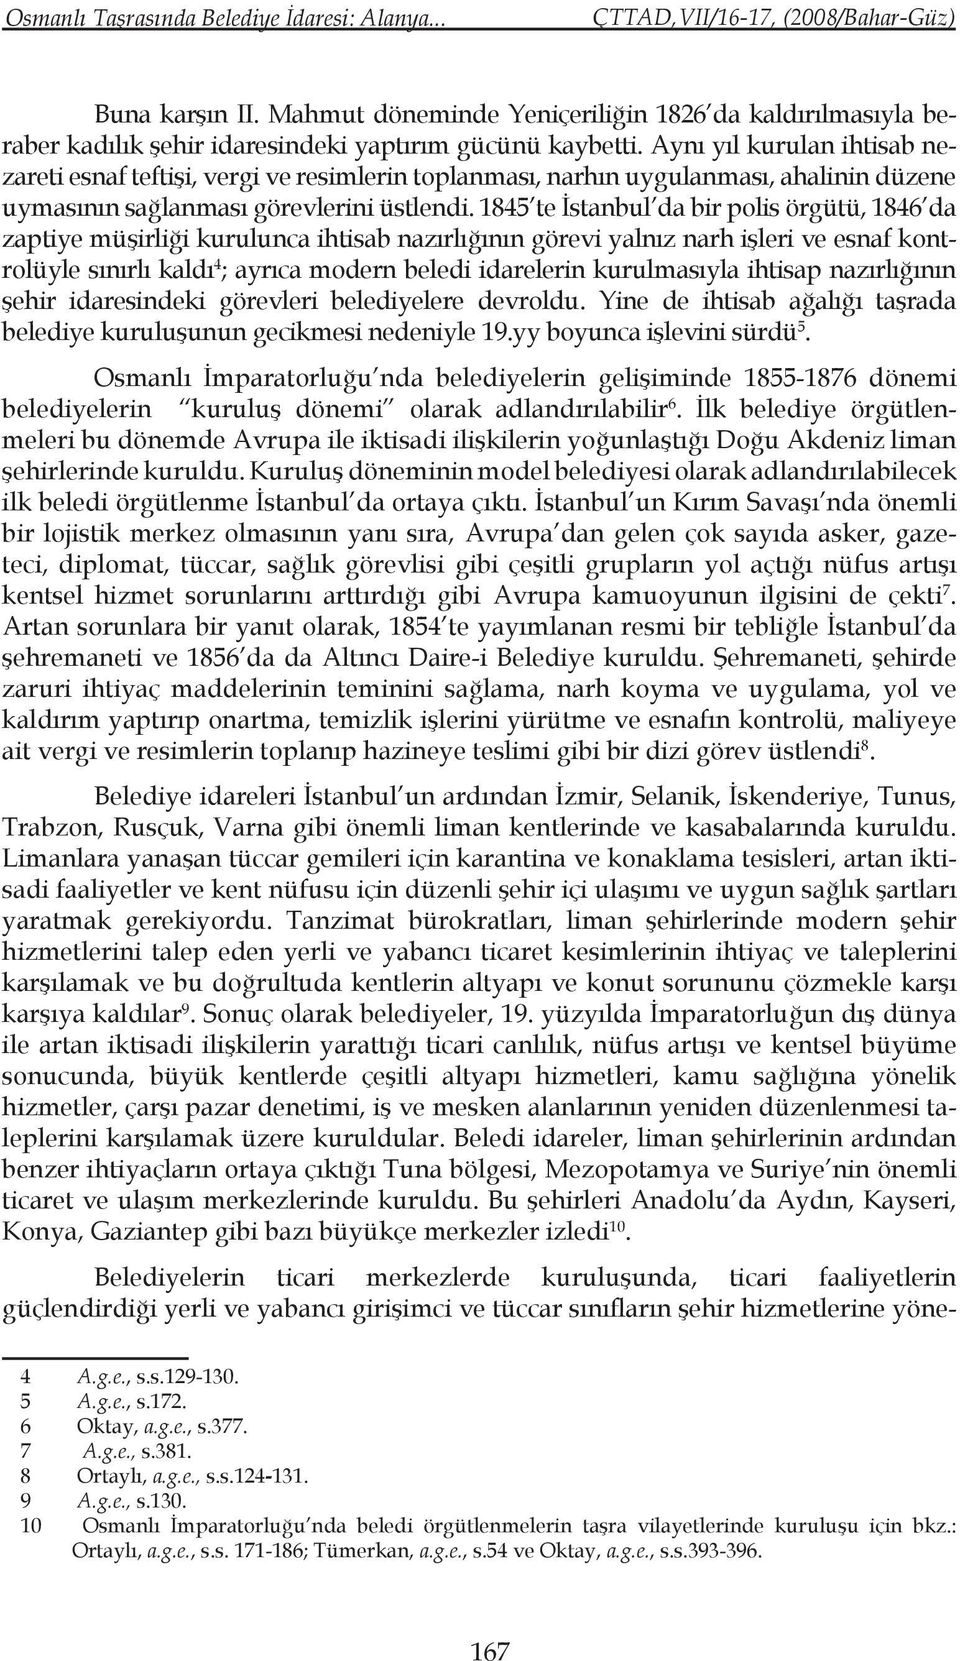 1845 te İstanbul da bir polis örgütü, 1846 da zaptiye müşirliği kurulunca ihtisab nazırlığının görevi yalnız narh işleri ve esnaf kontrolüyle sınırlı kaldı 4 ; ayrıca modern beledi idarelerin